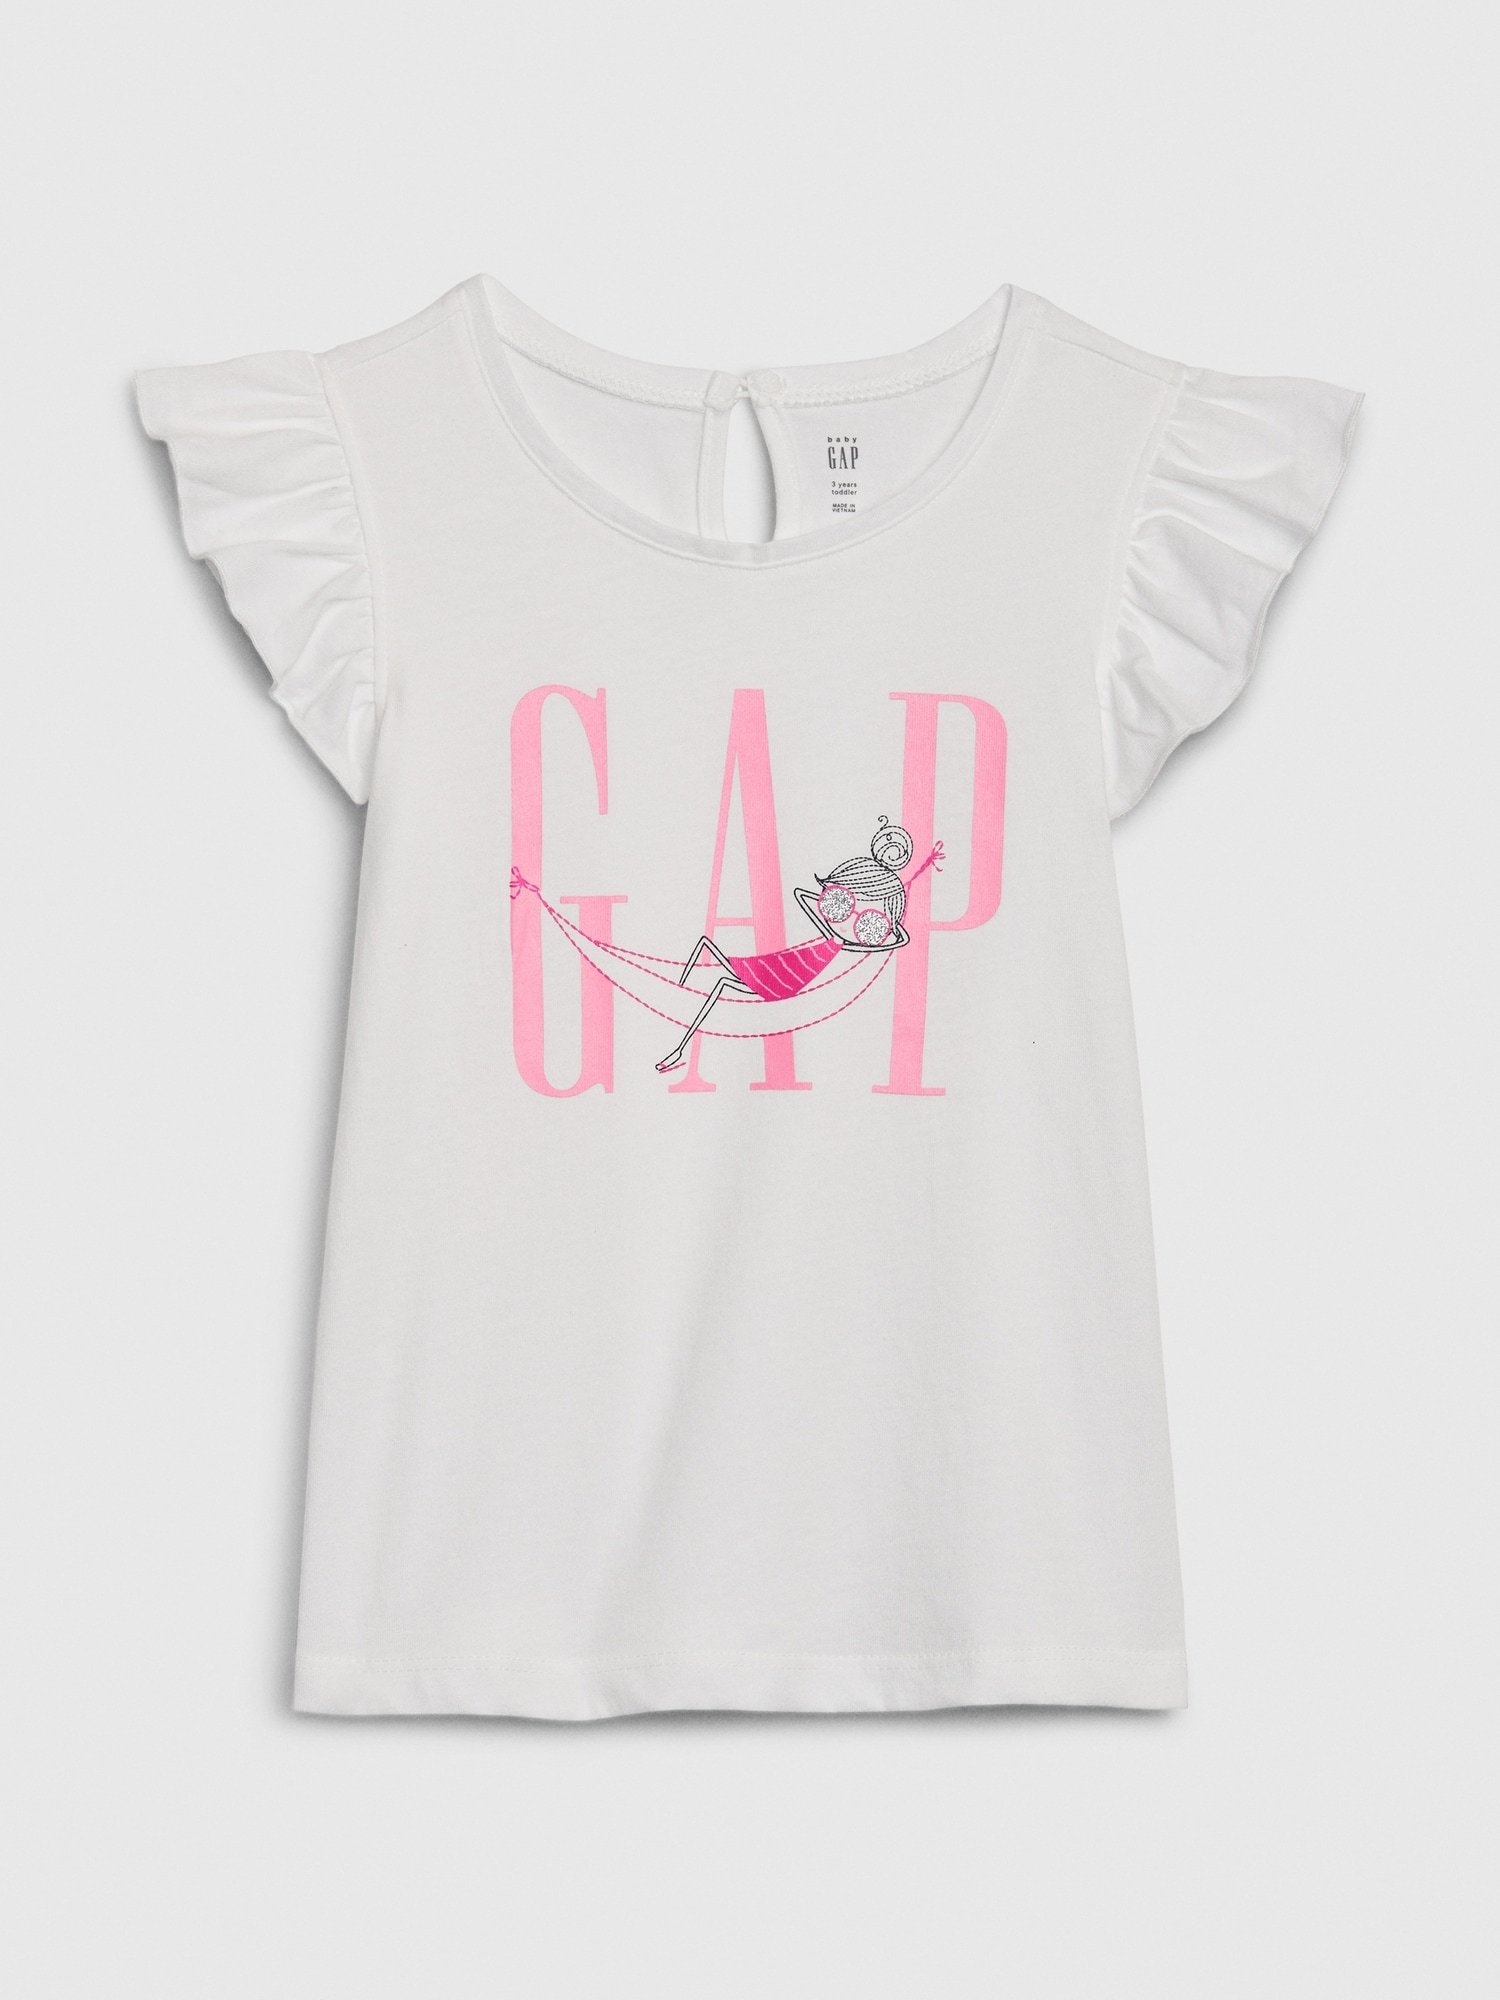 Bea Gap Logo T-Shirt product image